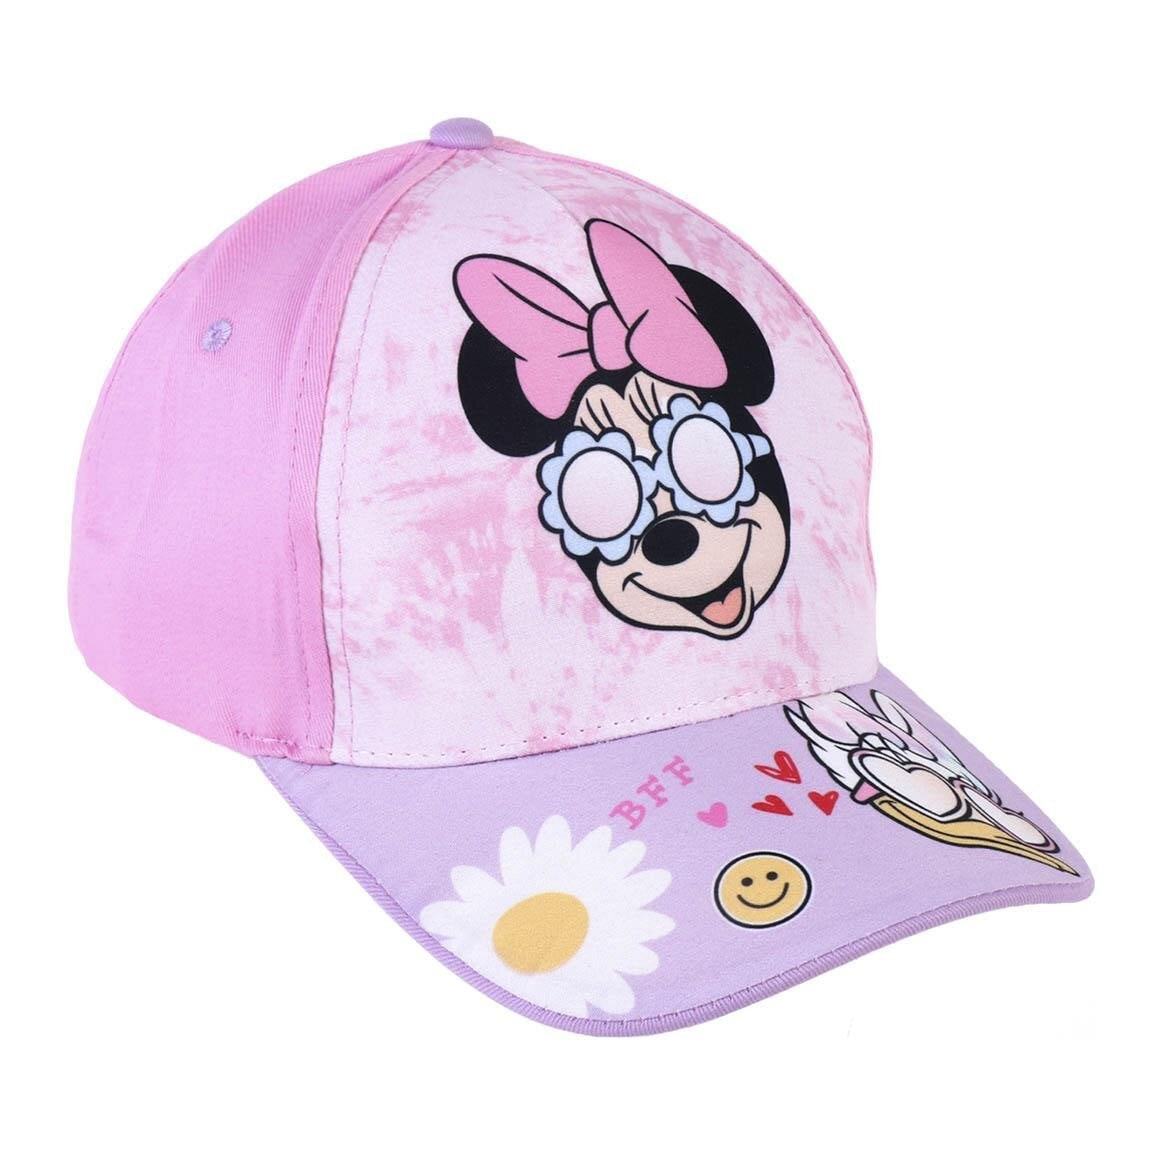 Minnie Mouse Boutique - Kinderpet